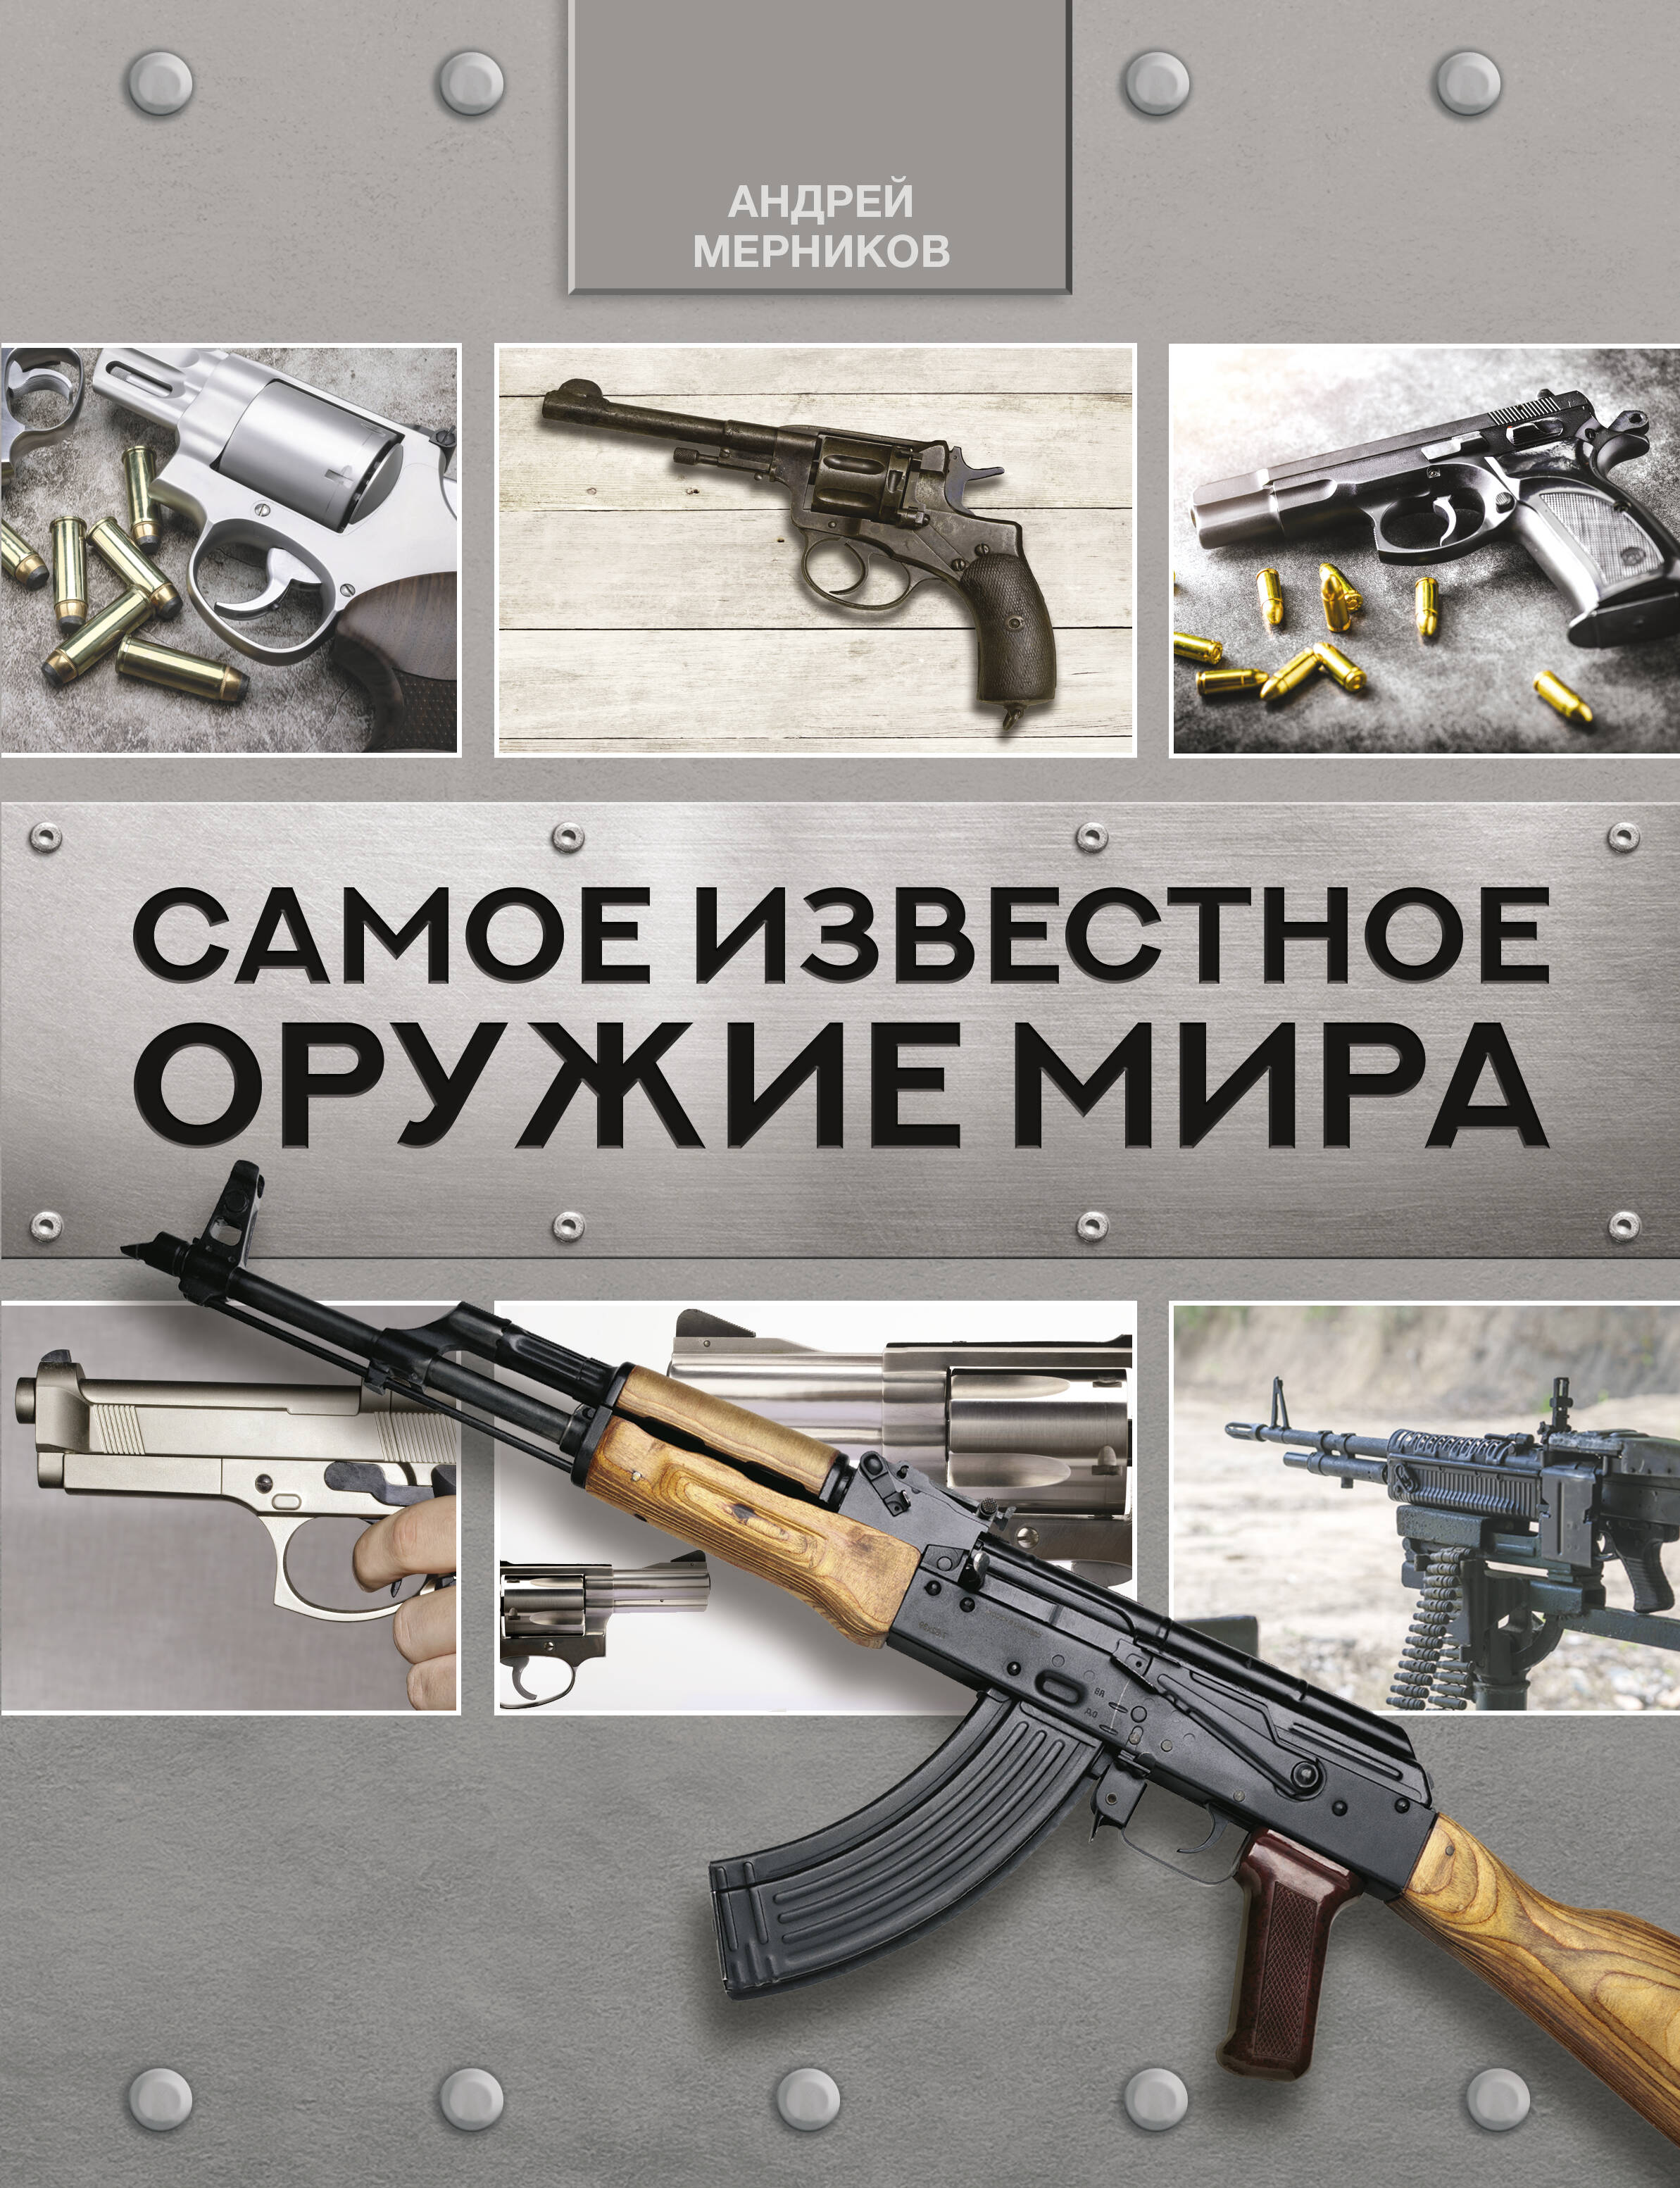 Мерников Андрей Геннадьевич Самое известное оружие мира - страница 0